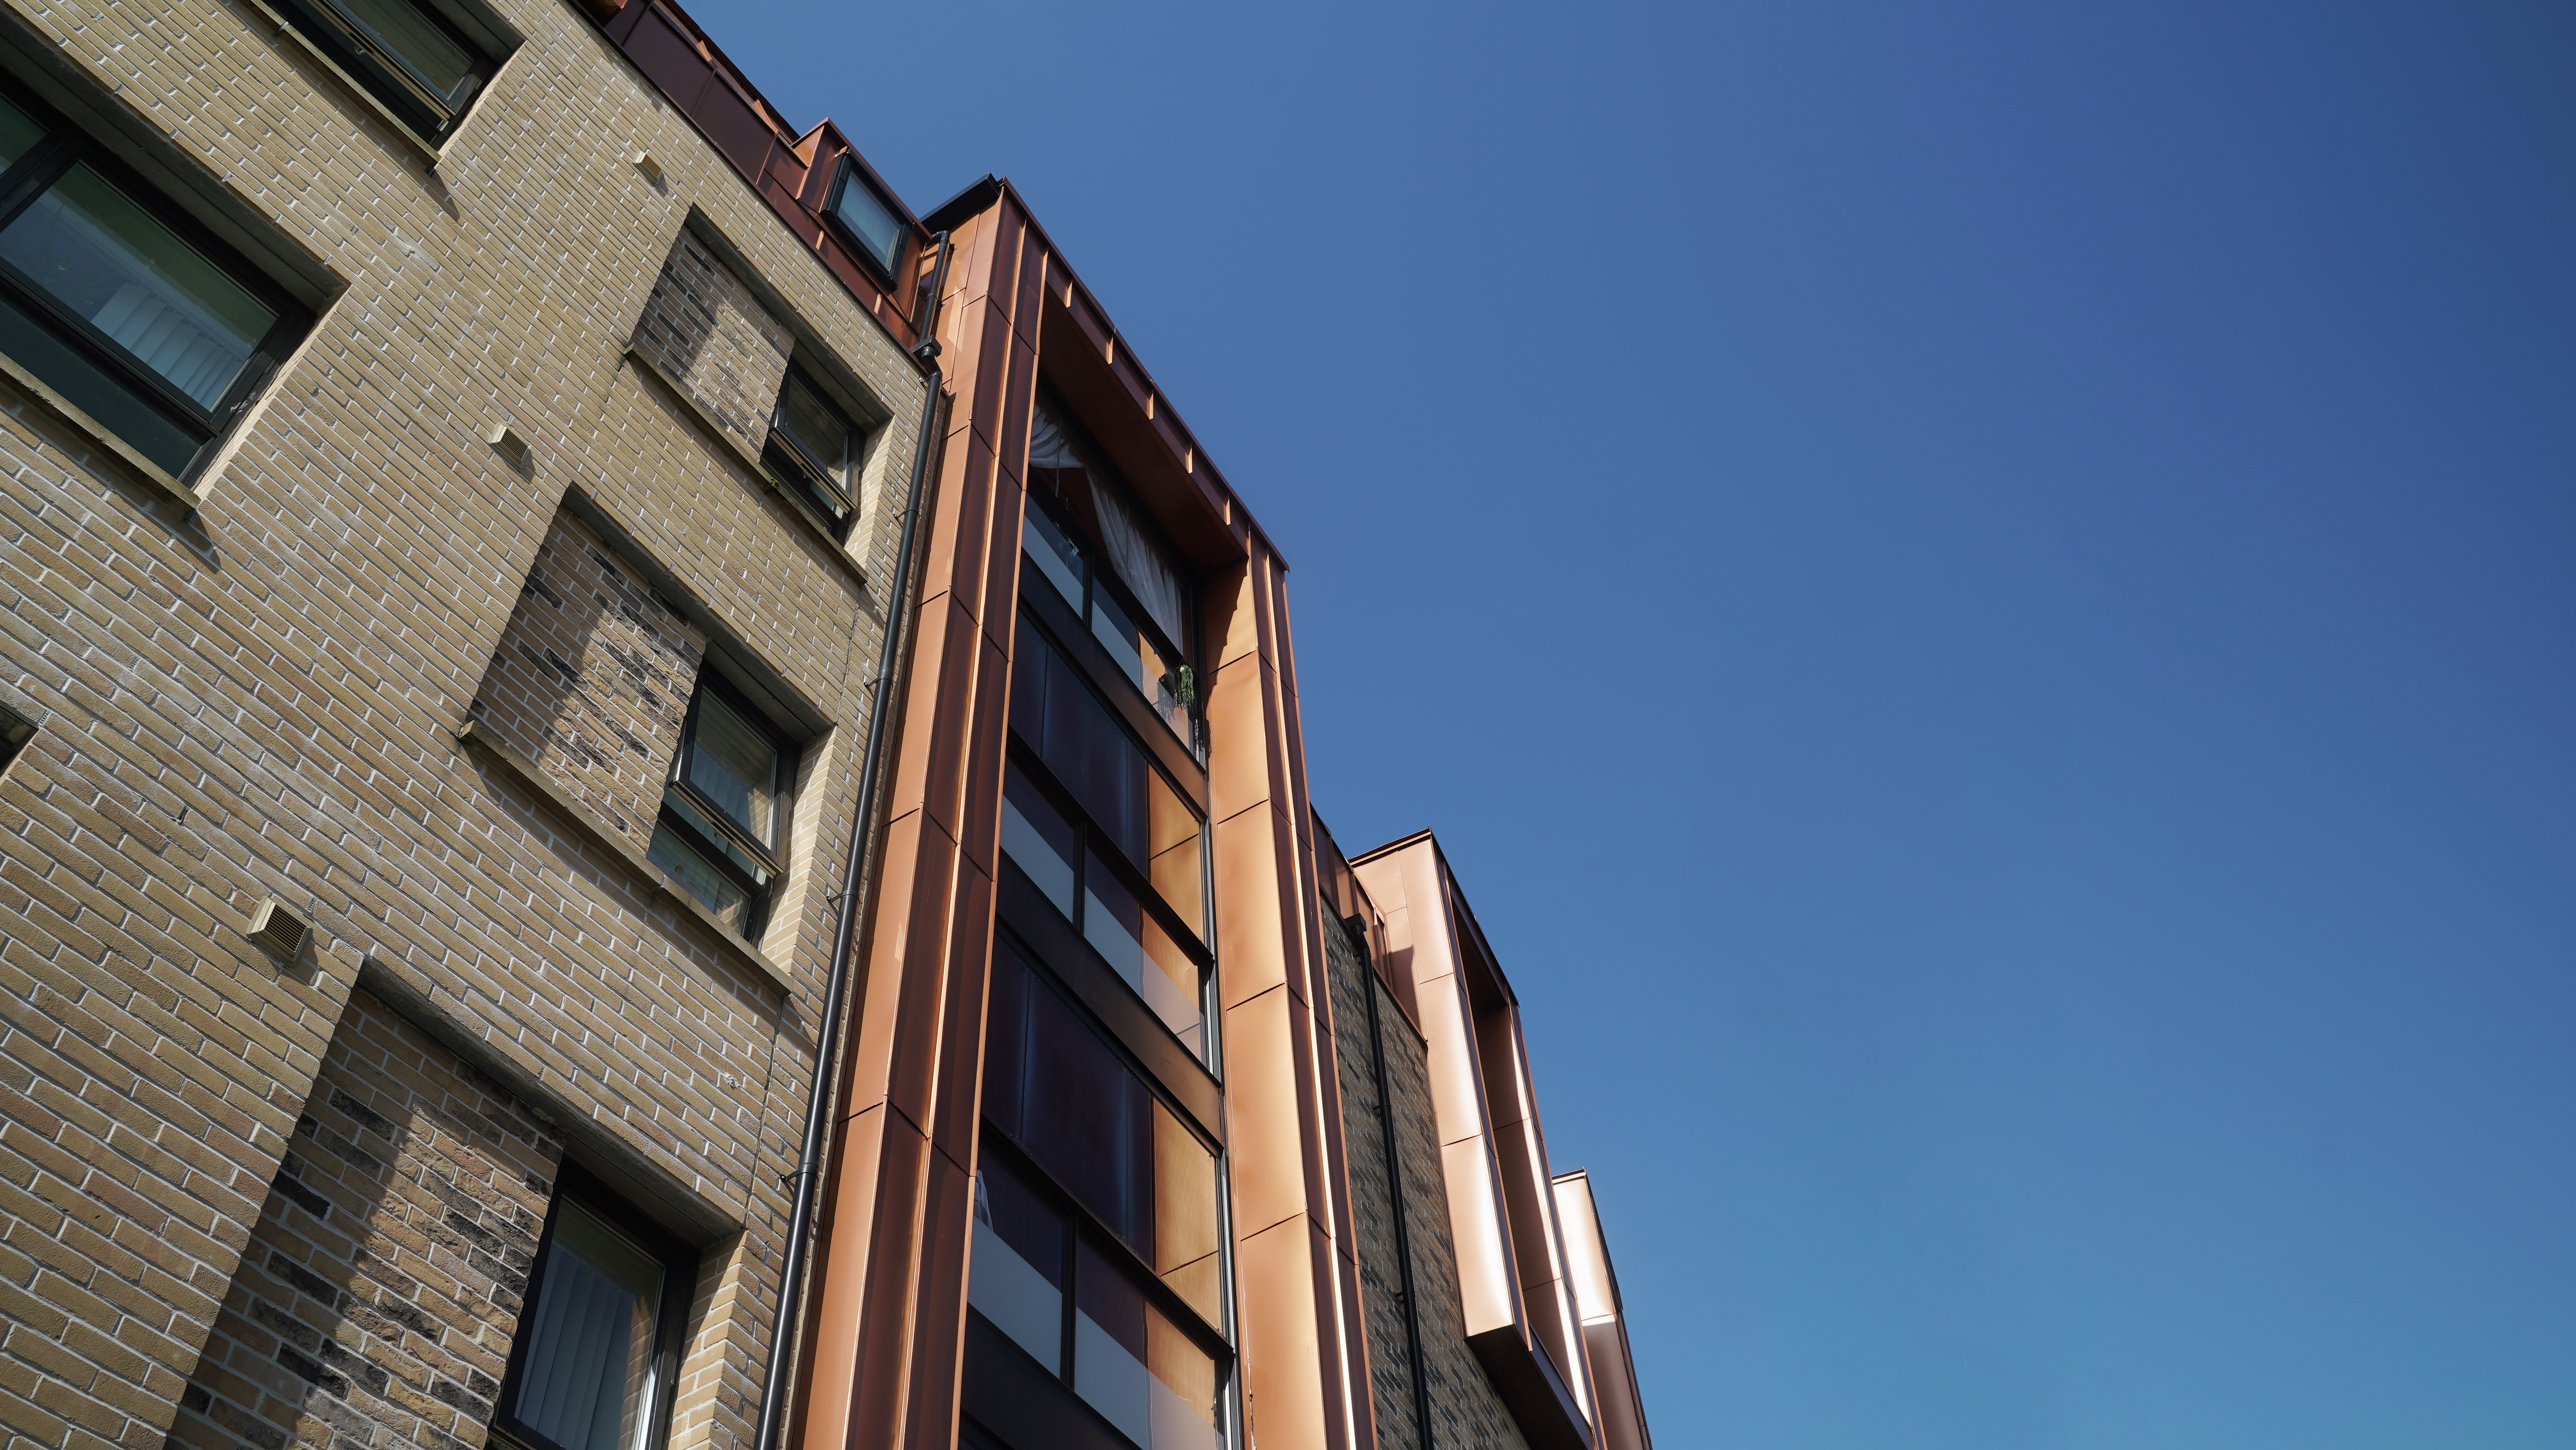 Perspektivische Ansicht der Fassade einer modernen Wohnhausanlage in der Nethan Street in Glasgow, verkleidet mit FALZONAL in Neukupfer. Die metallischen Fassadenelemente fangen das Licht ein und reflektierten es, was die Gebäudeform betont und einen eindrucksvollen visuellen Kontrast zur traditionellen Backsteinarchitektur bietet. Das PREFA Aluminiumprodukt sorgt nicht nur für eine ansprechende Ästhetik, sondern verspricht auch Langlebigkeit und geringen Wartungsaufwand.